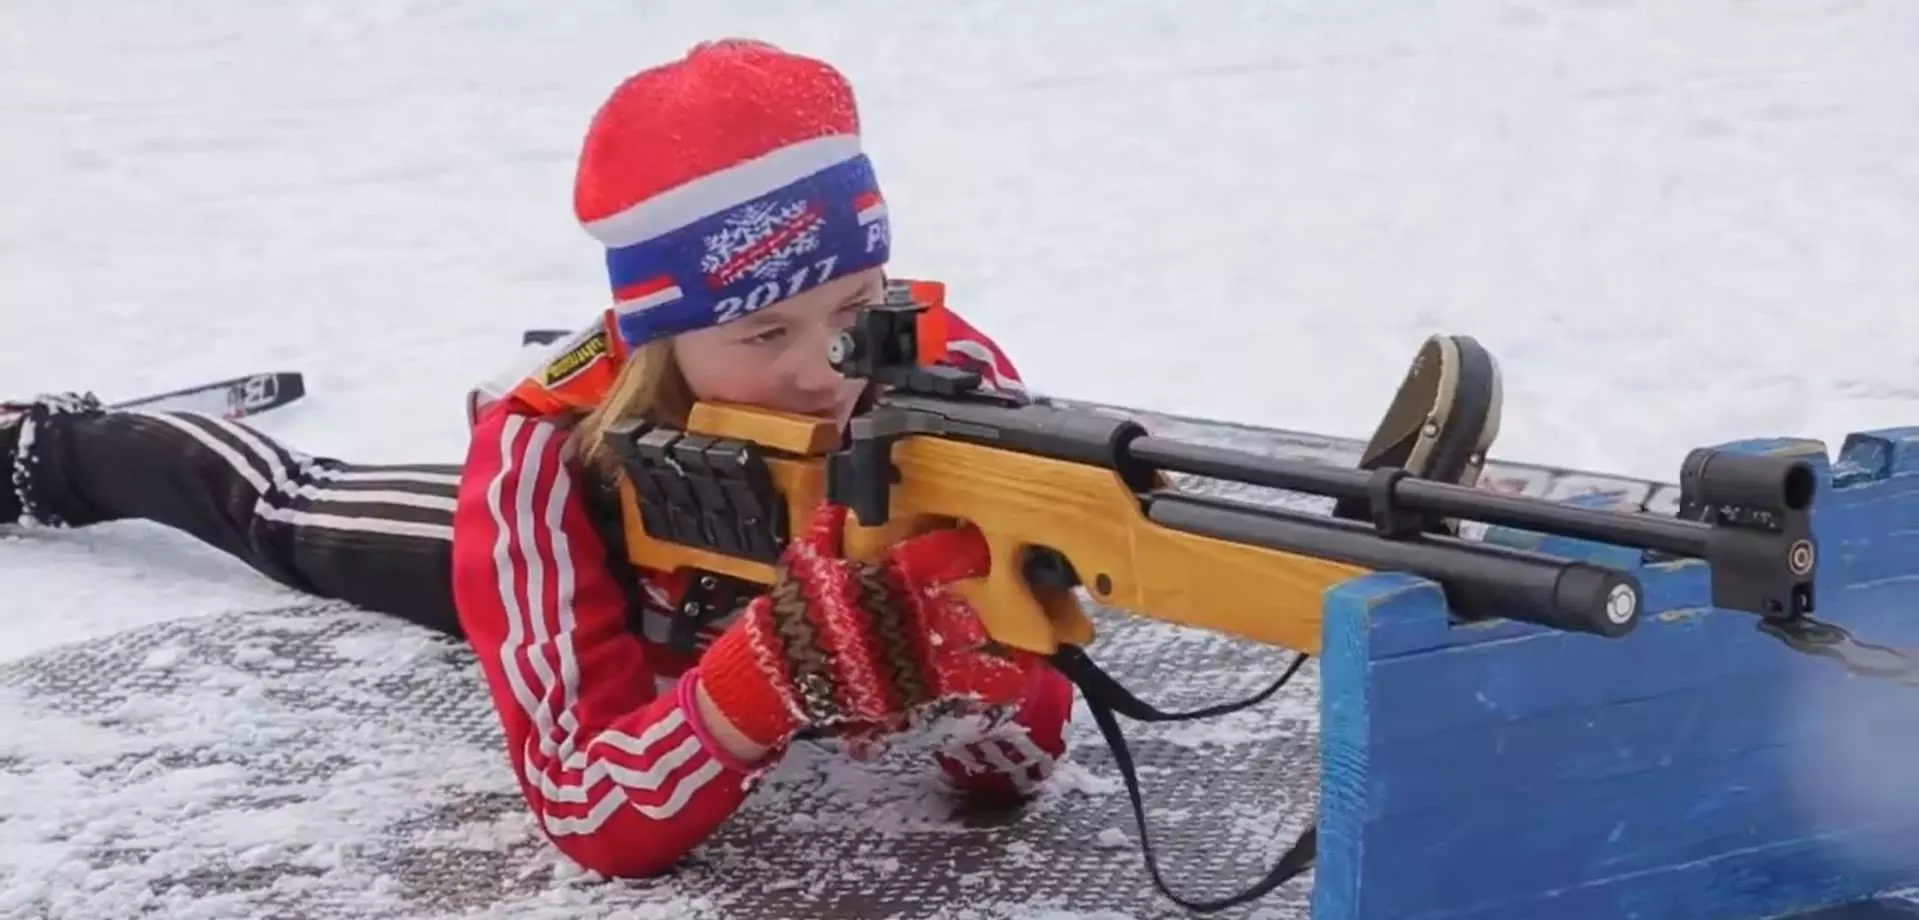 Electronic biathlon rifle shooting range prone position